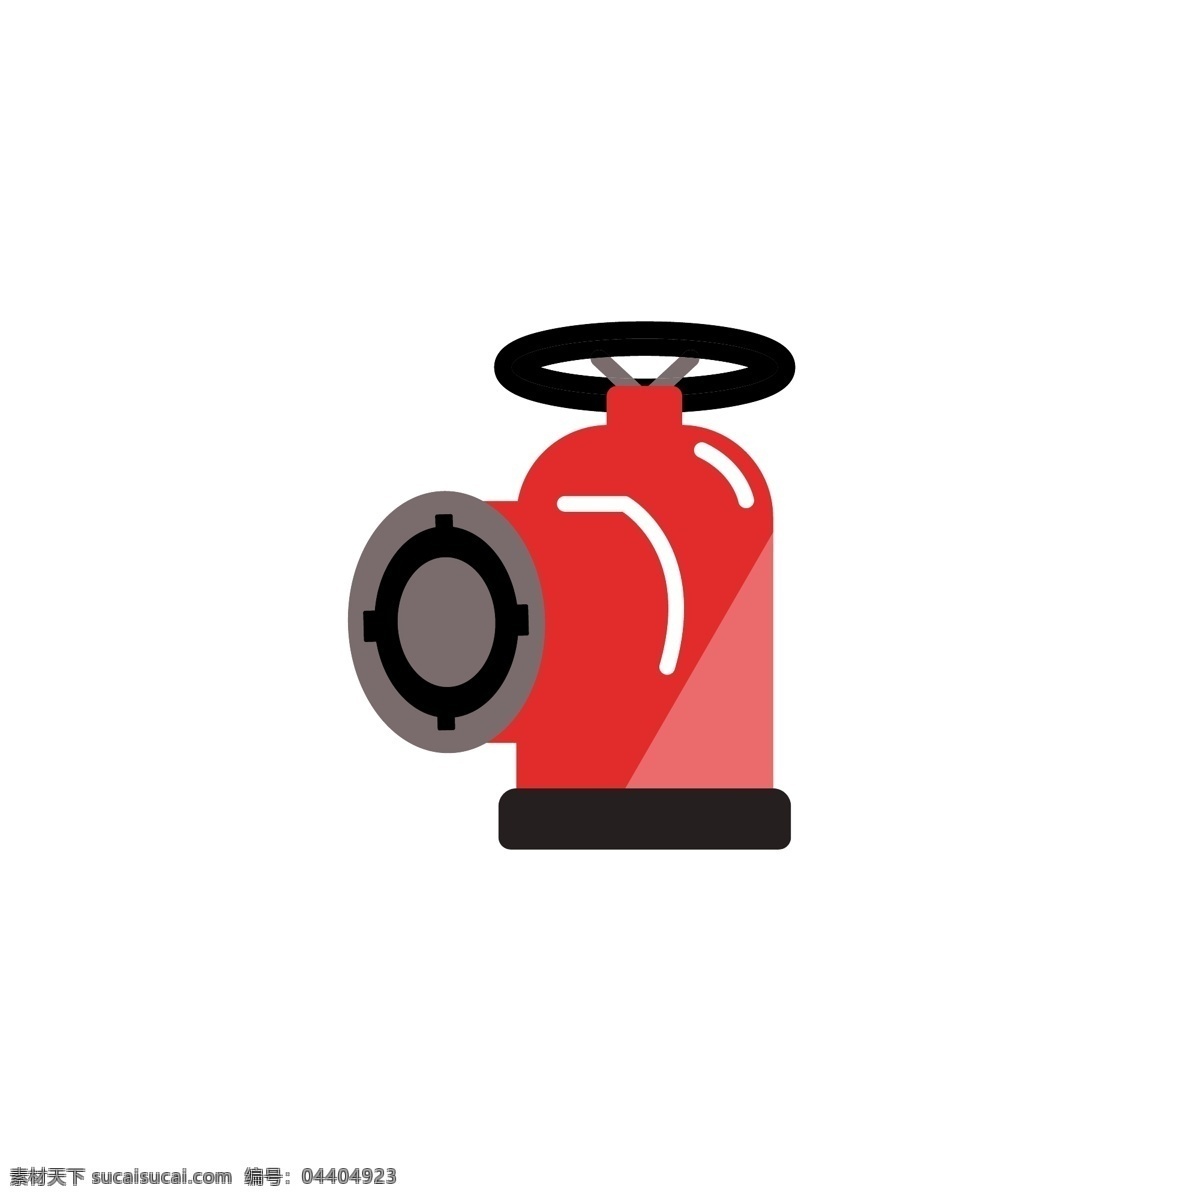 原创 消防 用品 设备 器材 防火 安全 消防栓 消防用品 消防器材 消防设备 防火安全 消防宣传